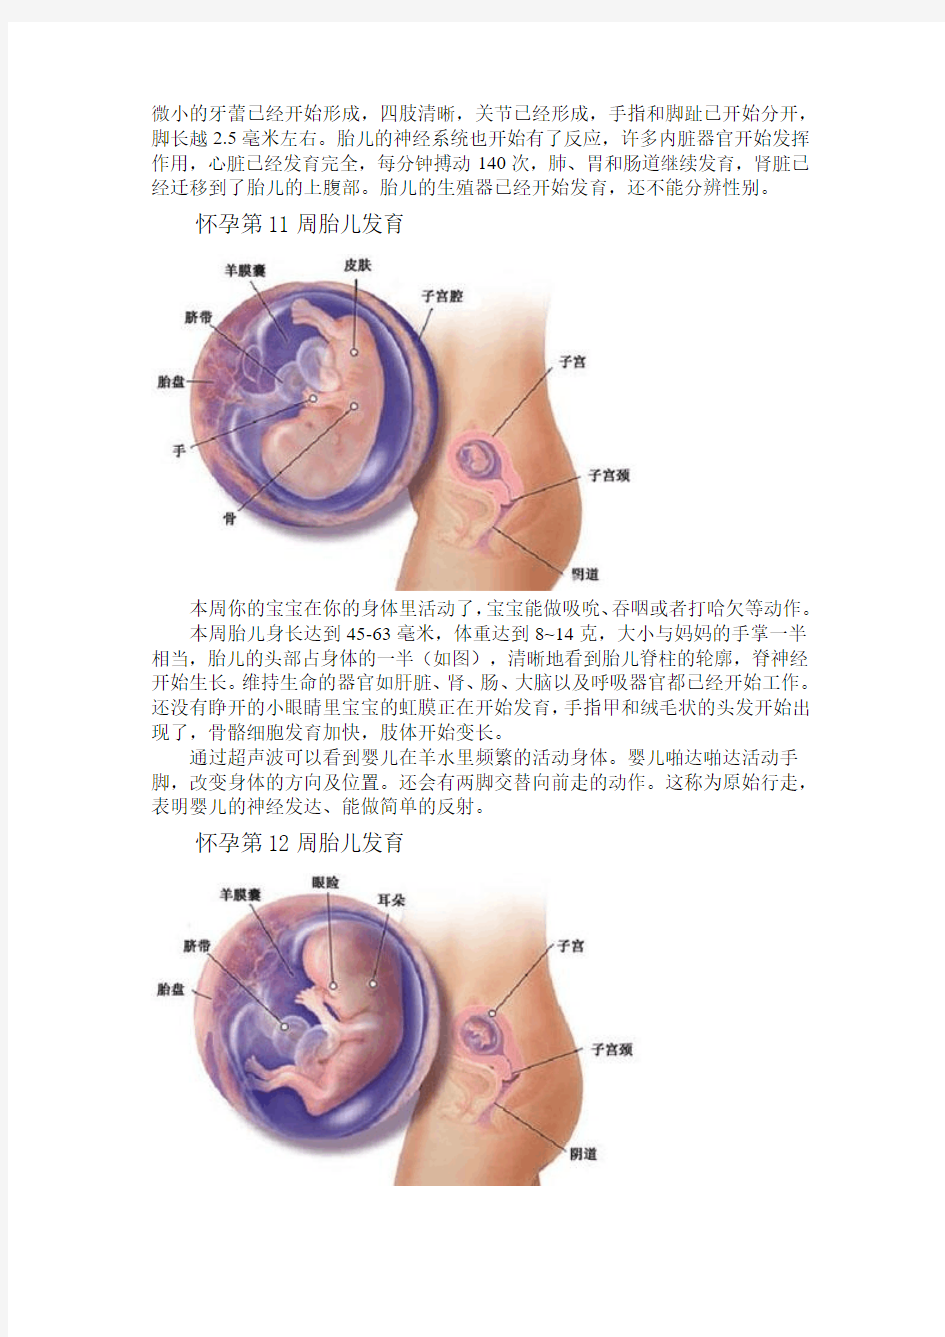 (转)怀孕40周内每周胎儿发育情况(详图)----第9-12周